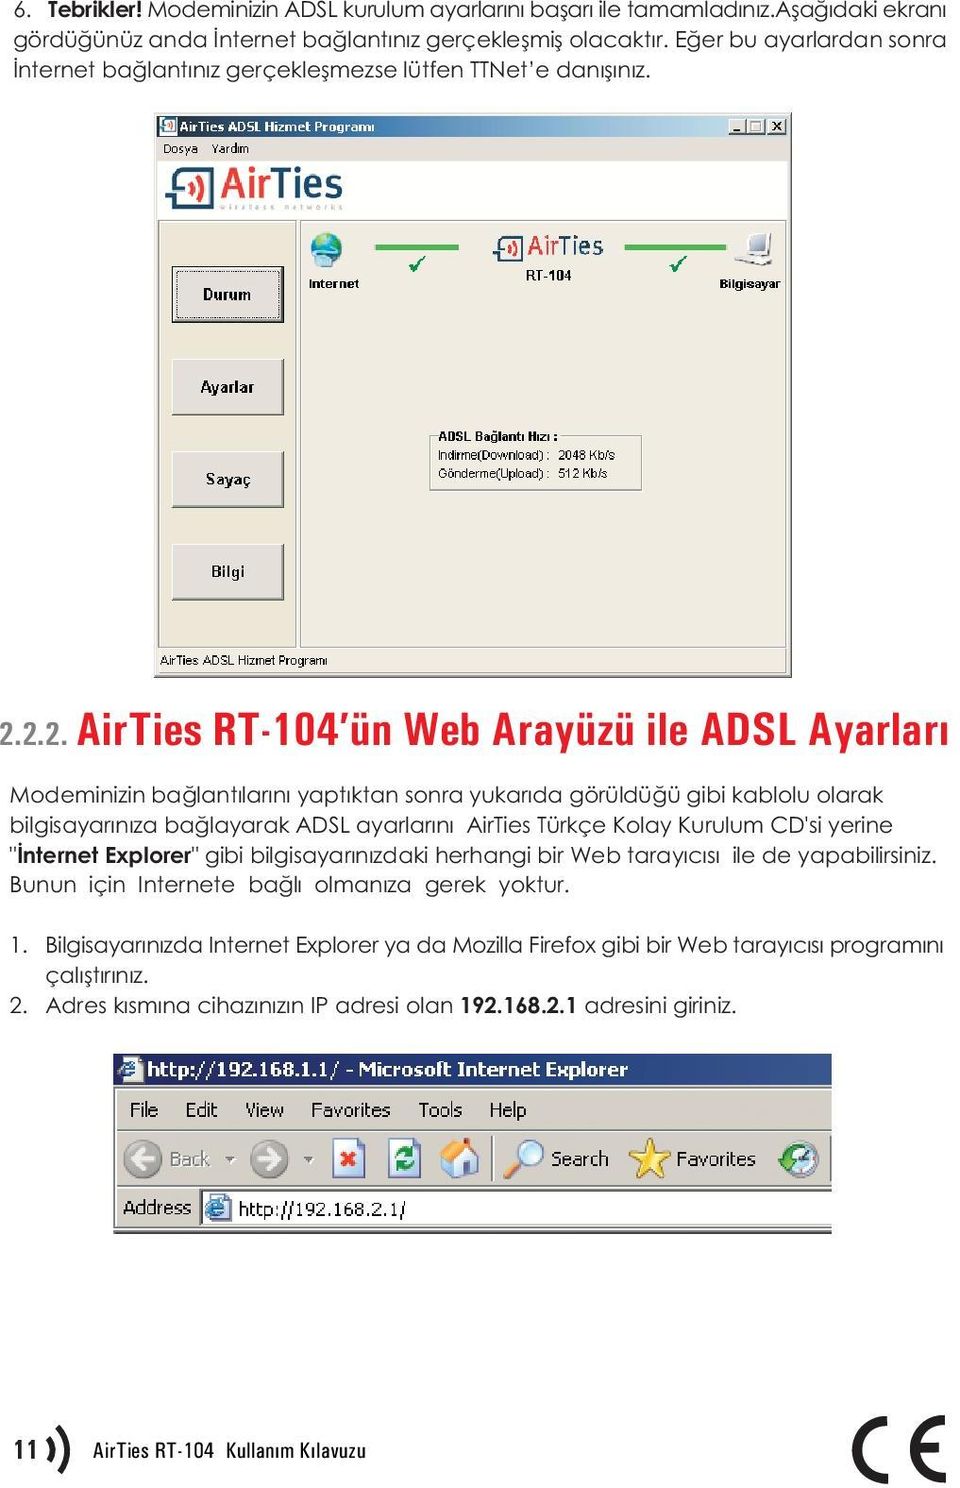 2.2. AirTies RT-104 ün Web Arayüzü ile ADSL Ayarlarý Modeminizin baðlantýlarýný yaptýktan sonra yukarýda görüldüðü gibi kablolu olarak bilgisayarýnýza baðlayarak ADSL ayarlarýný AirTies Türkçe Kolay